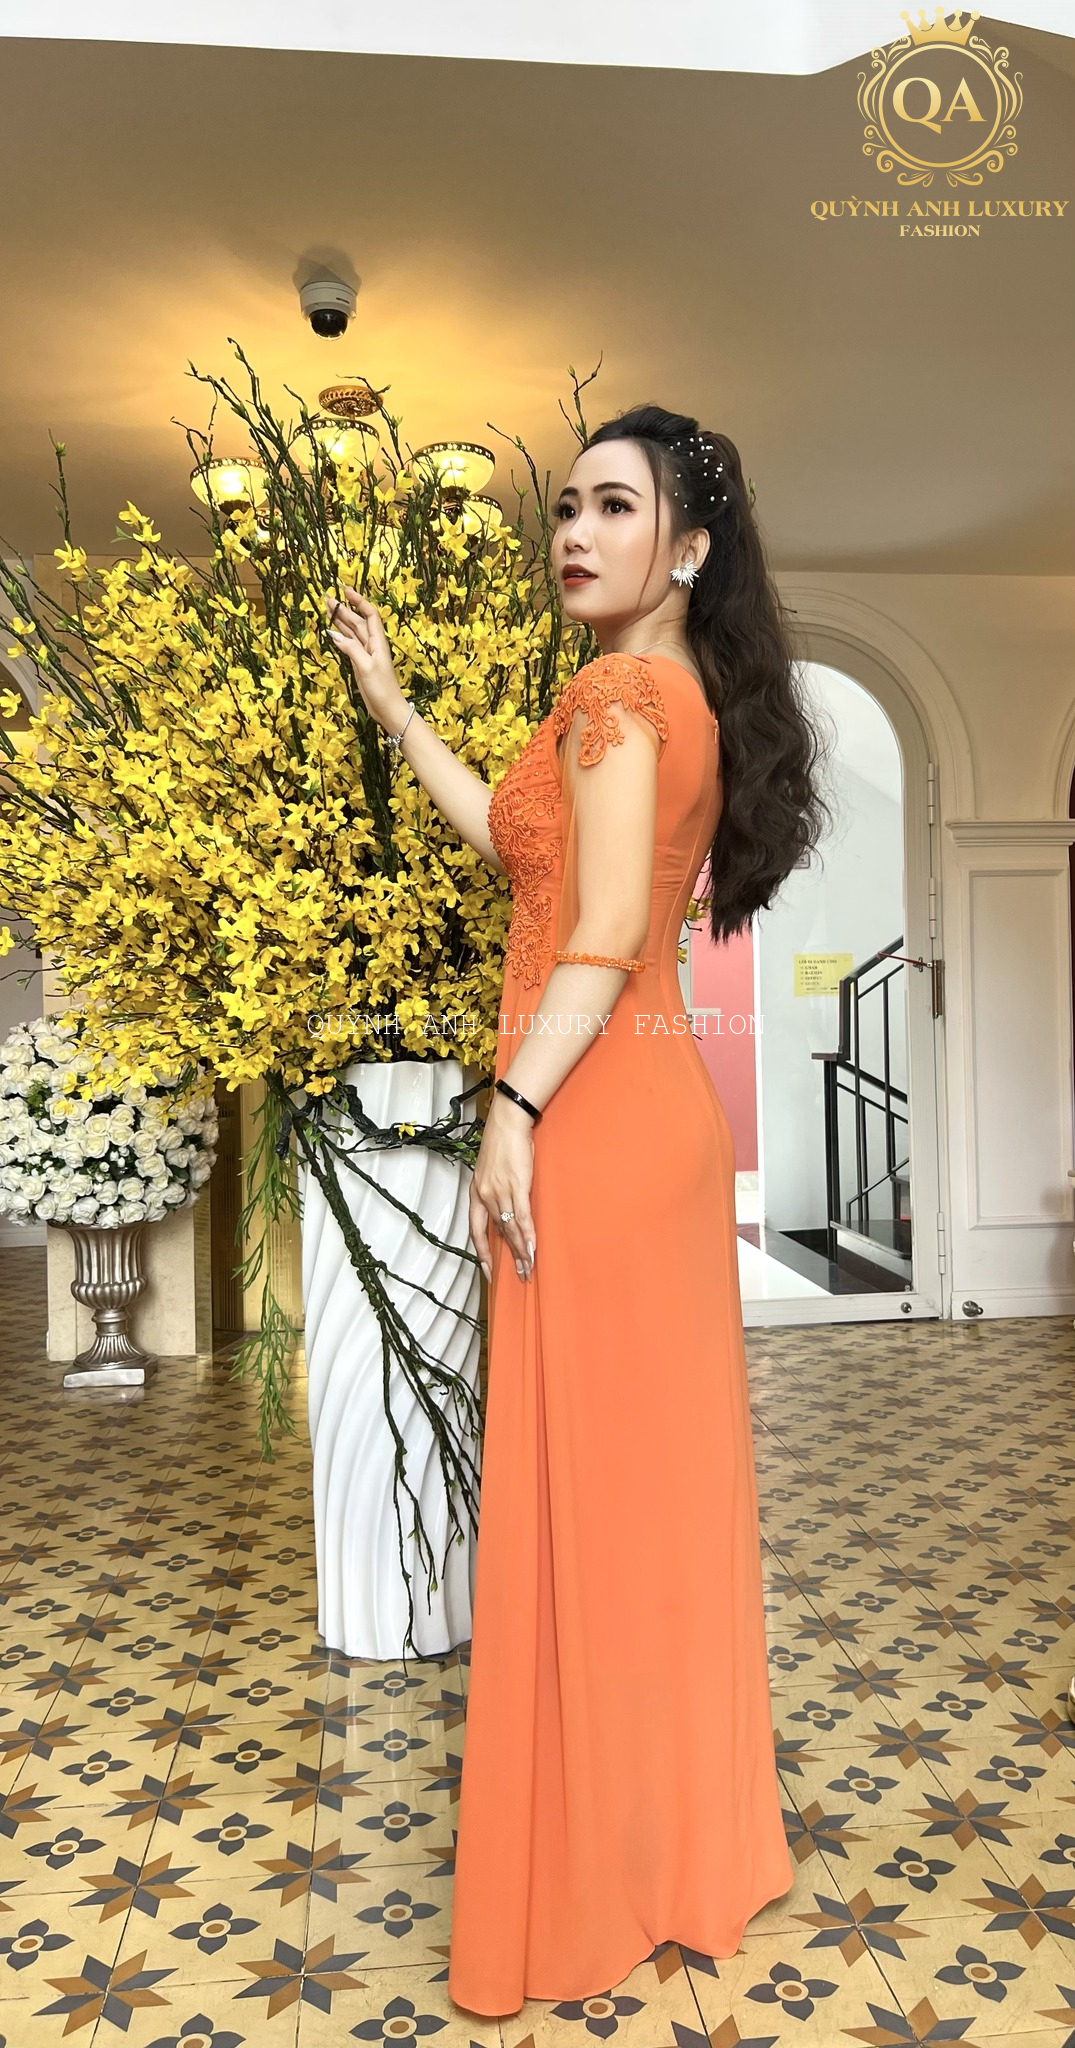 Top 4 kiểu đầm dạ hội bà sui đẹp nhất tại Quỳnh Anh Luxury